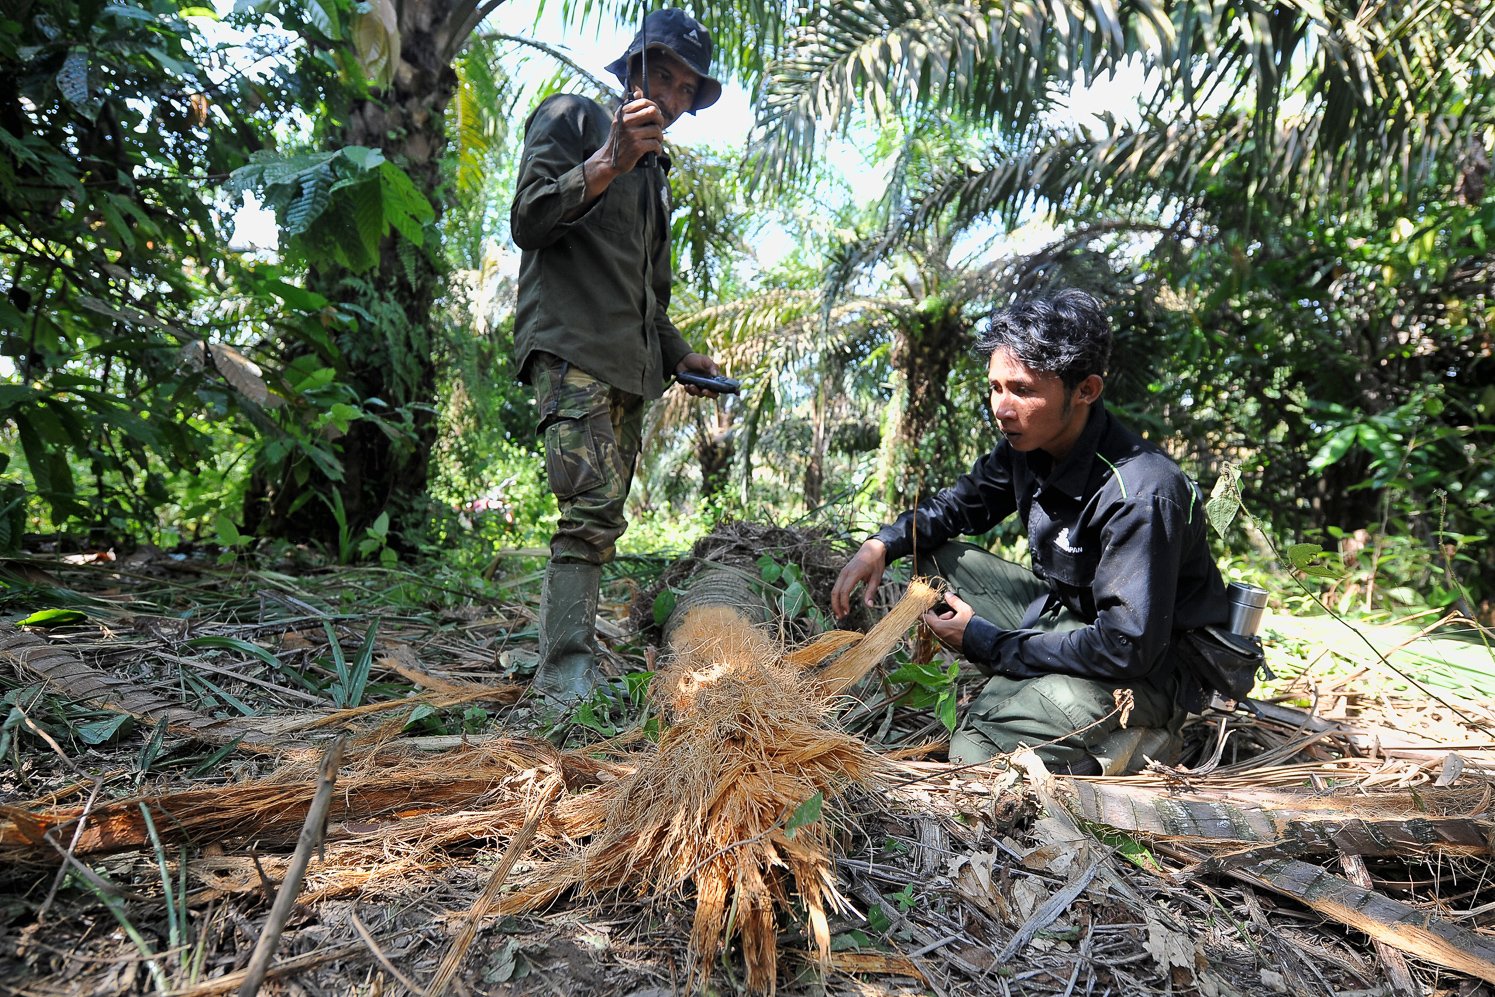 Januardi (kiri) dan Seleksa (kanan) memeriksa temuan pohon kelapa yang tumbang akibat dilewati gajah saat pemonitoran gajah di Sarolangun, Jambi.